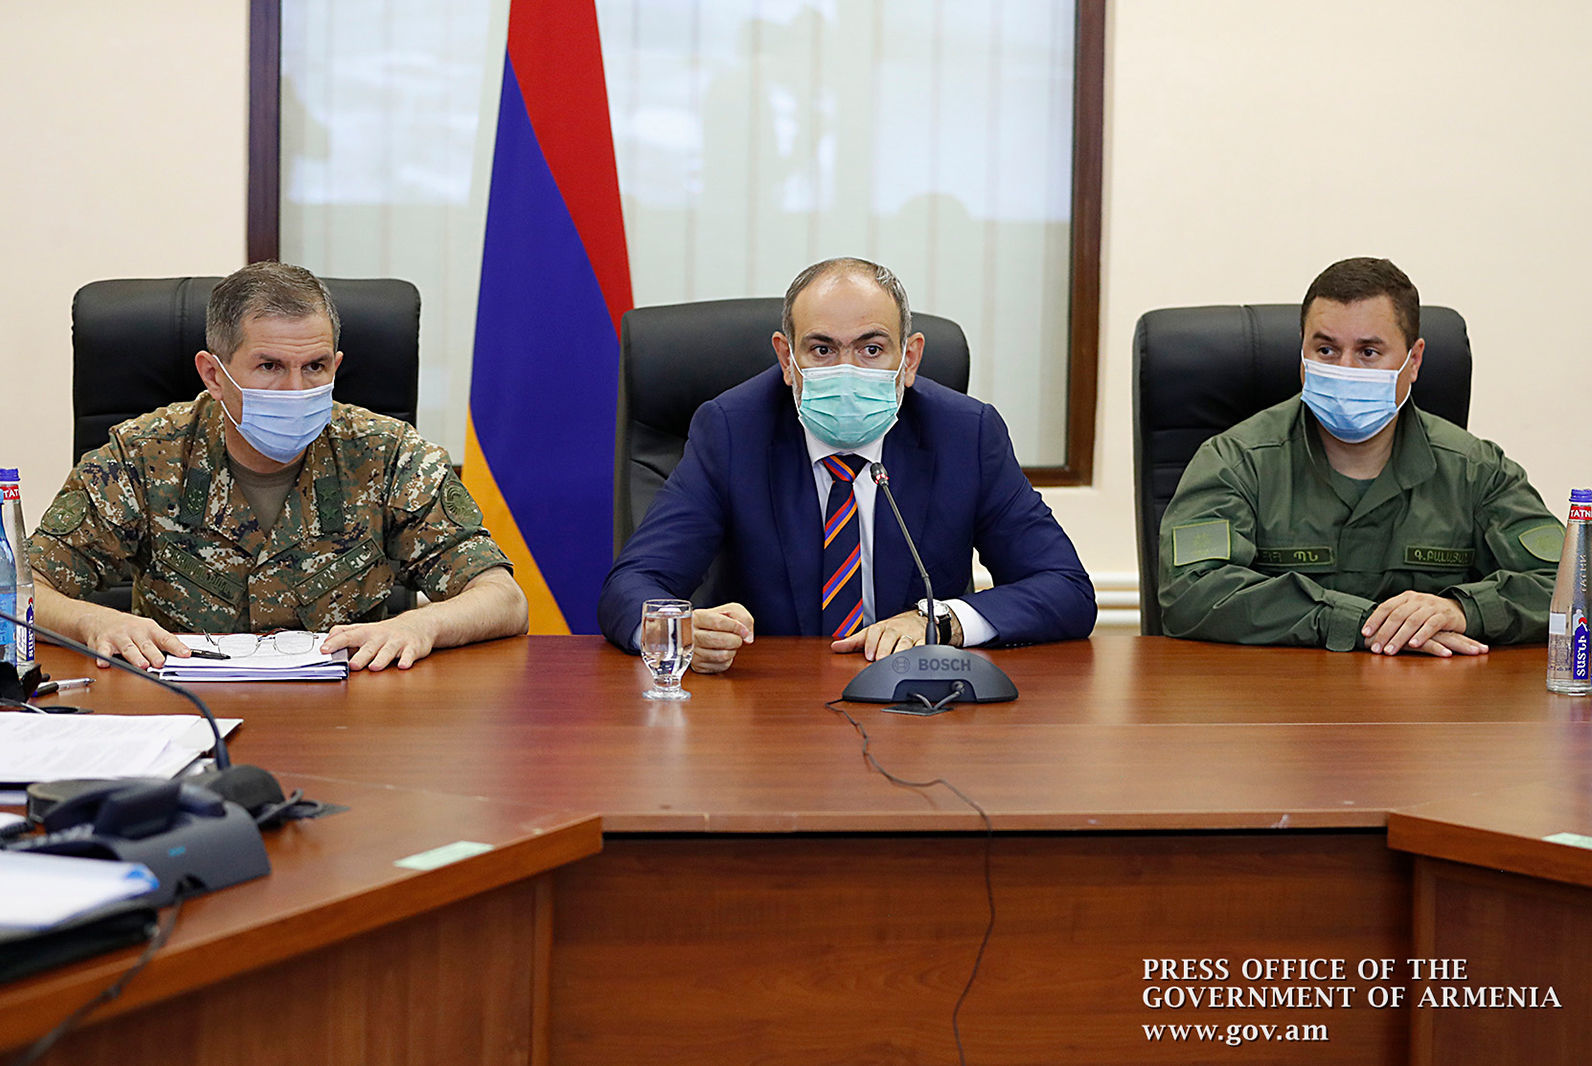 "У ВС Армении одна задача – одержать победу": Пашинян встретился с руководством армии  